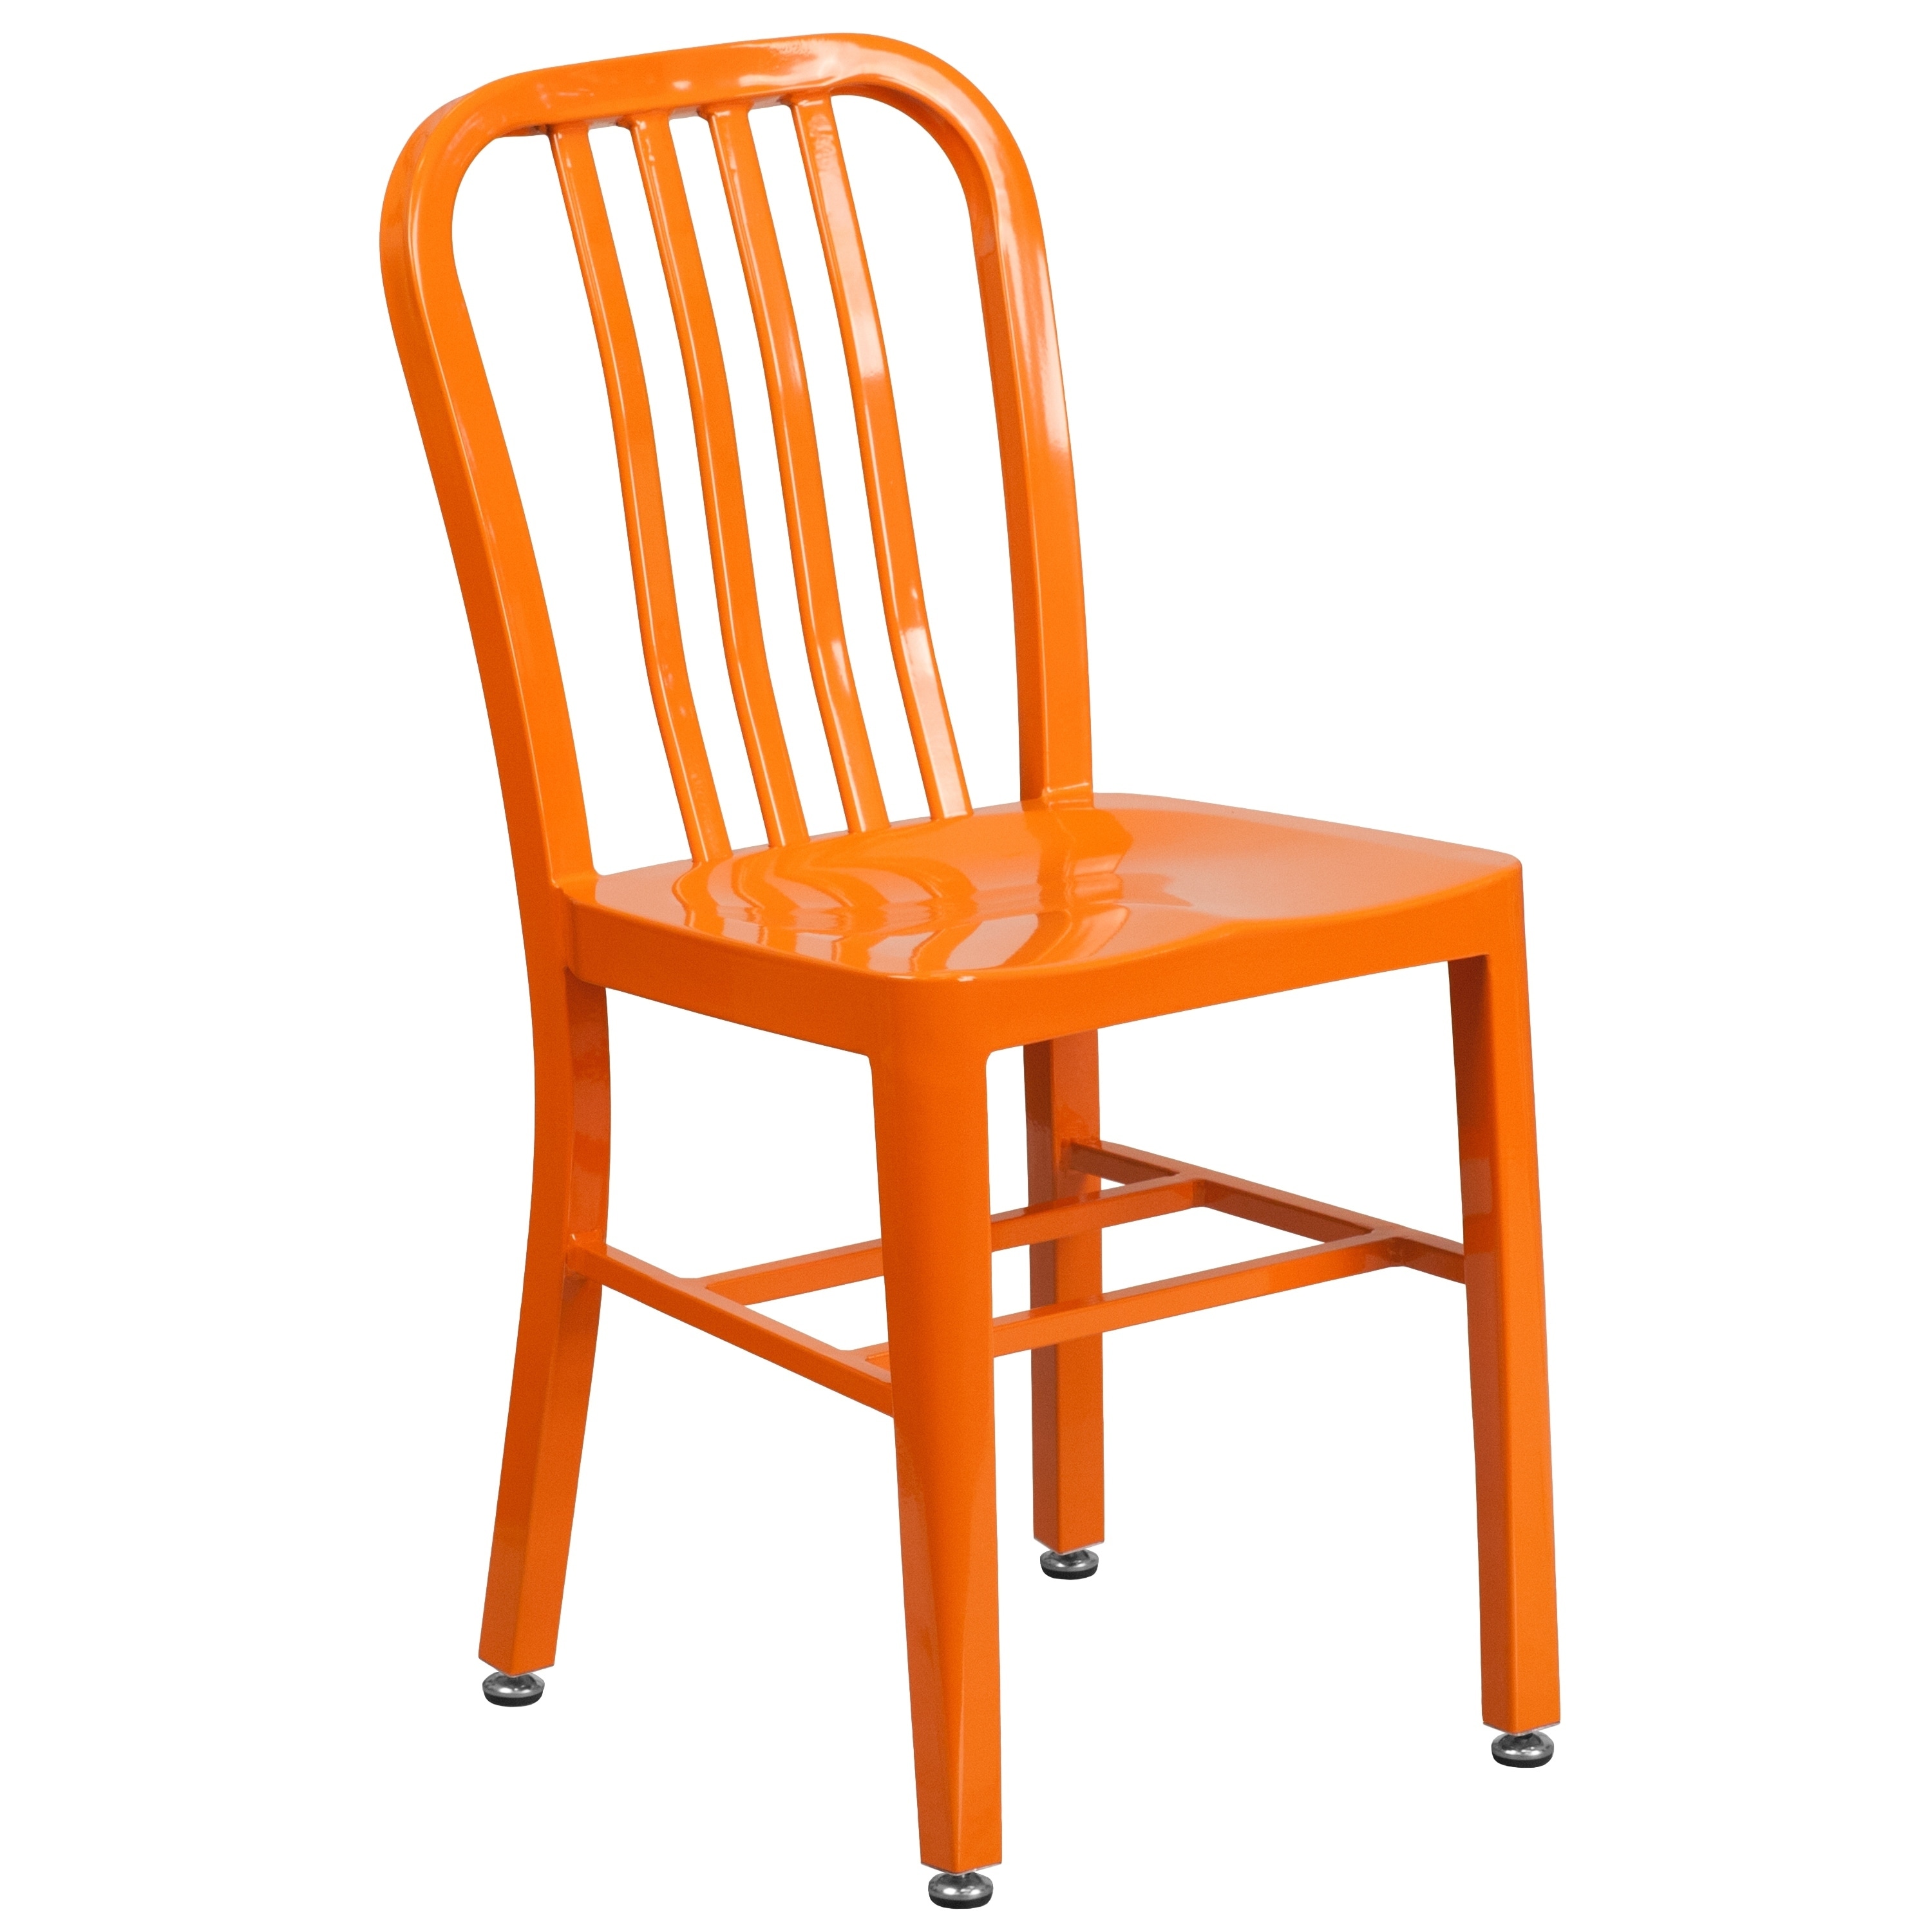 Картинка стул. Оранжевый стул. Оранжевый стульчик. Оранжевый стул на прозрачном фоне. Стул оранжевый без фона для фотошопа.